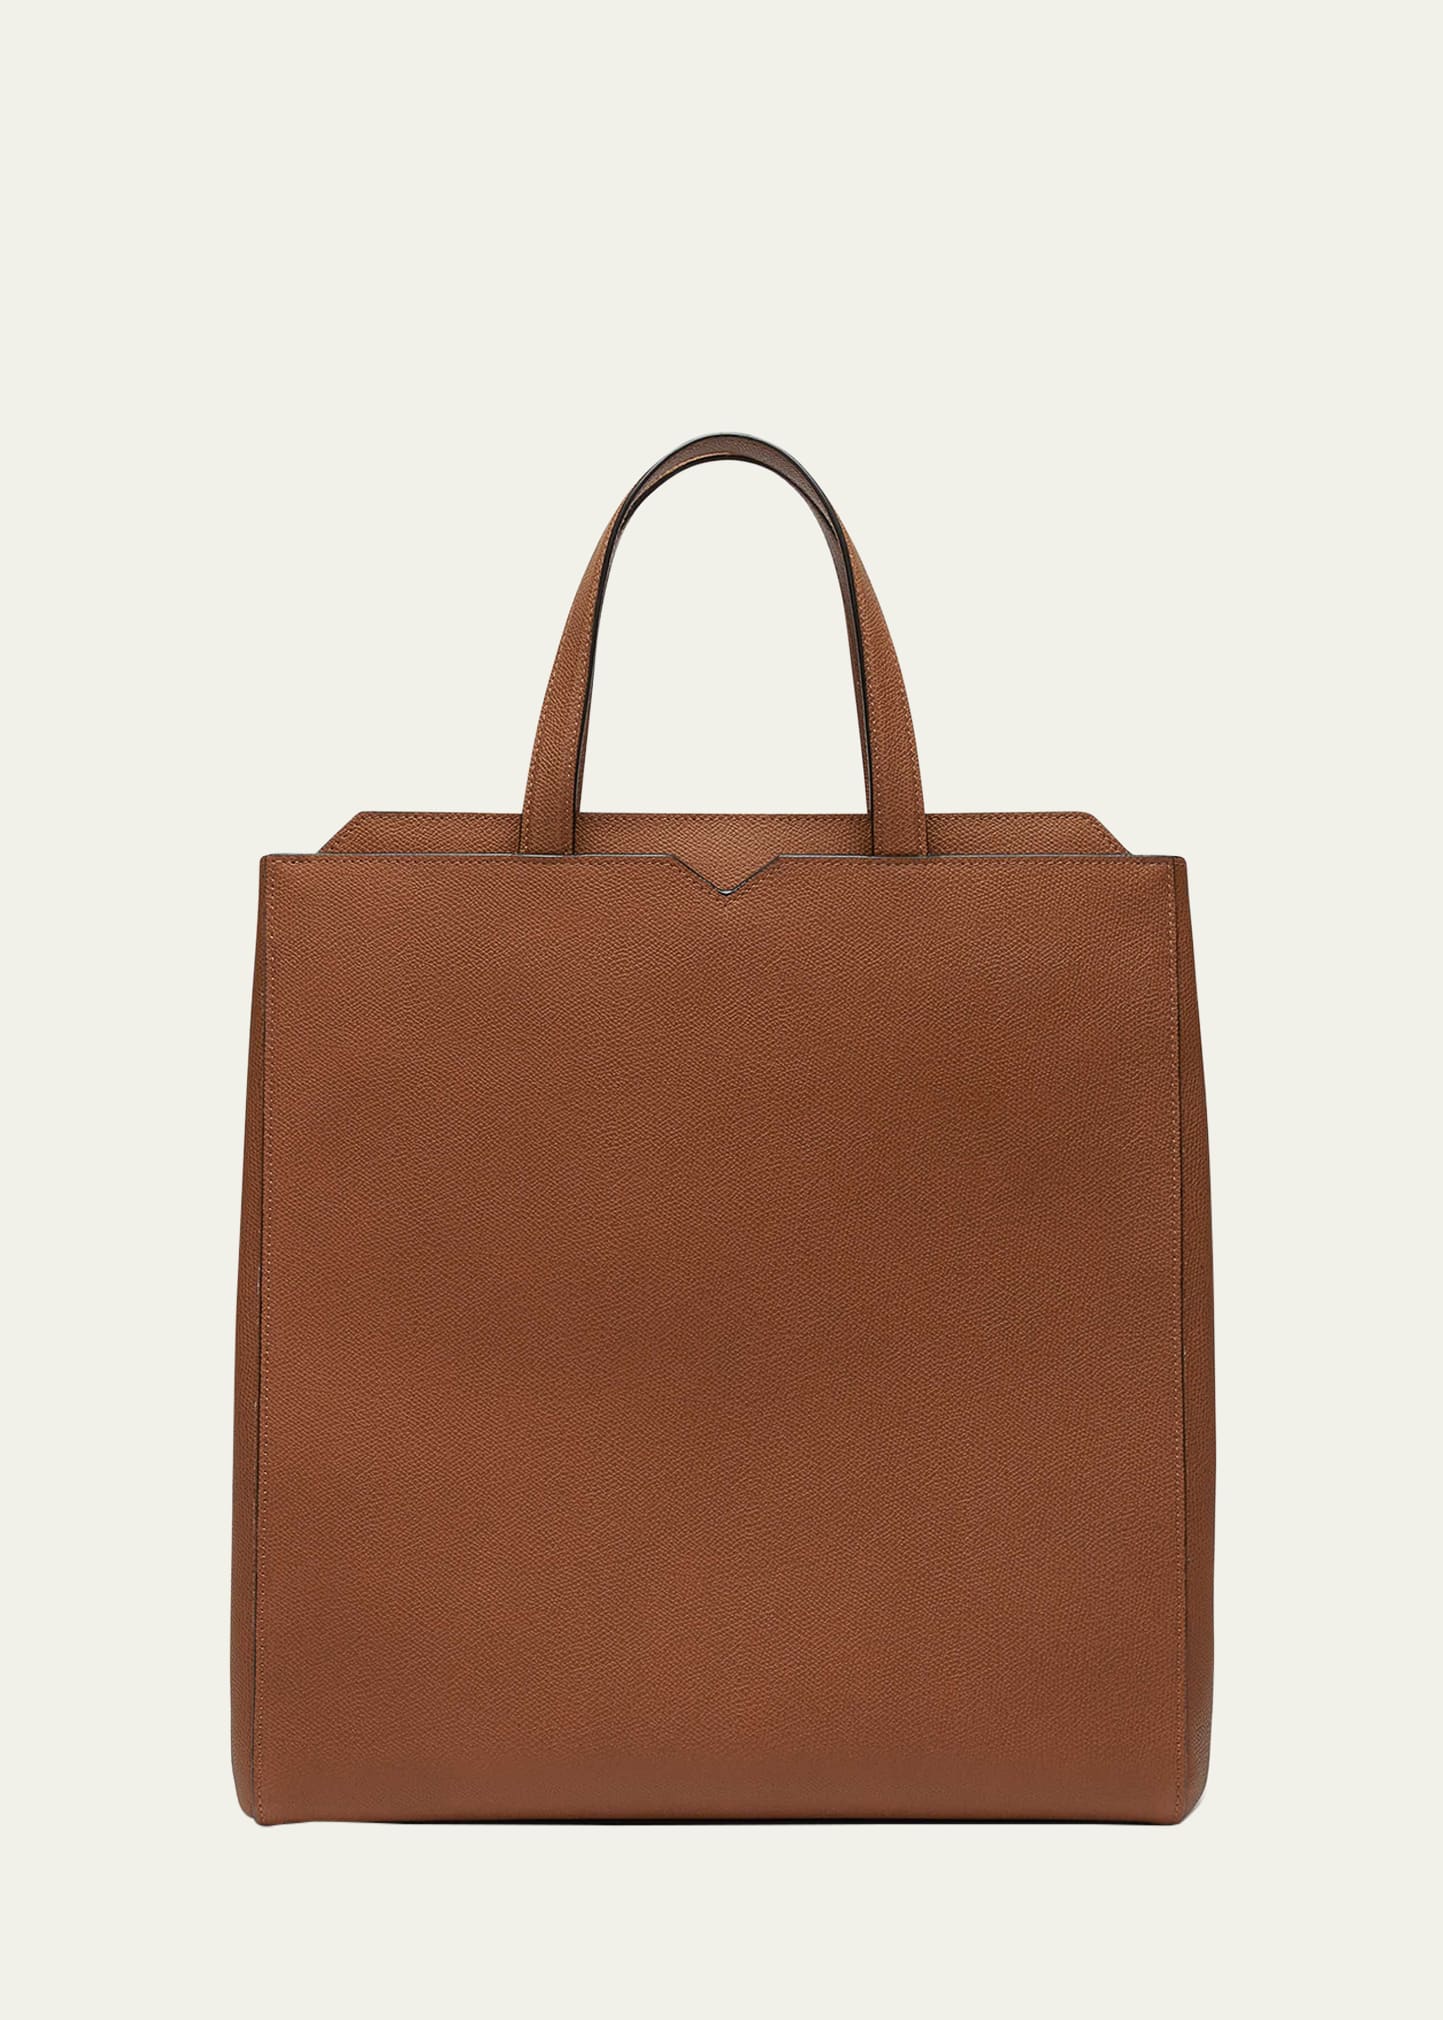 Valextra Men's V-line Calfksin Tote Bag In Mcc Chocolate Bro